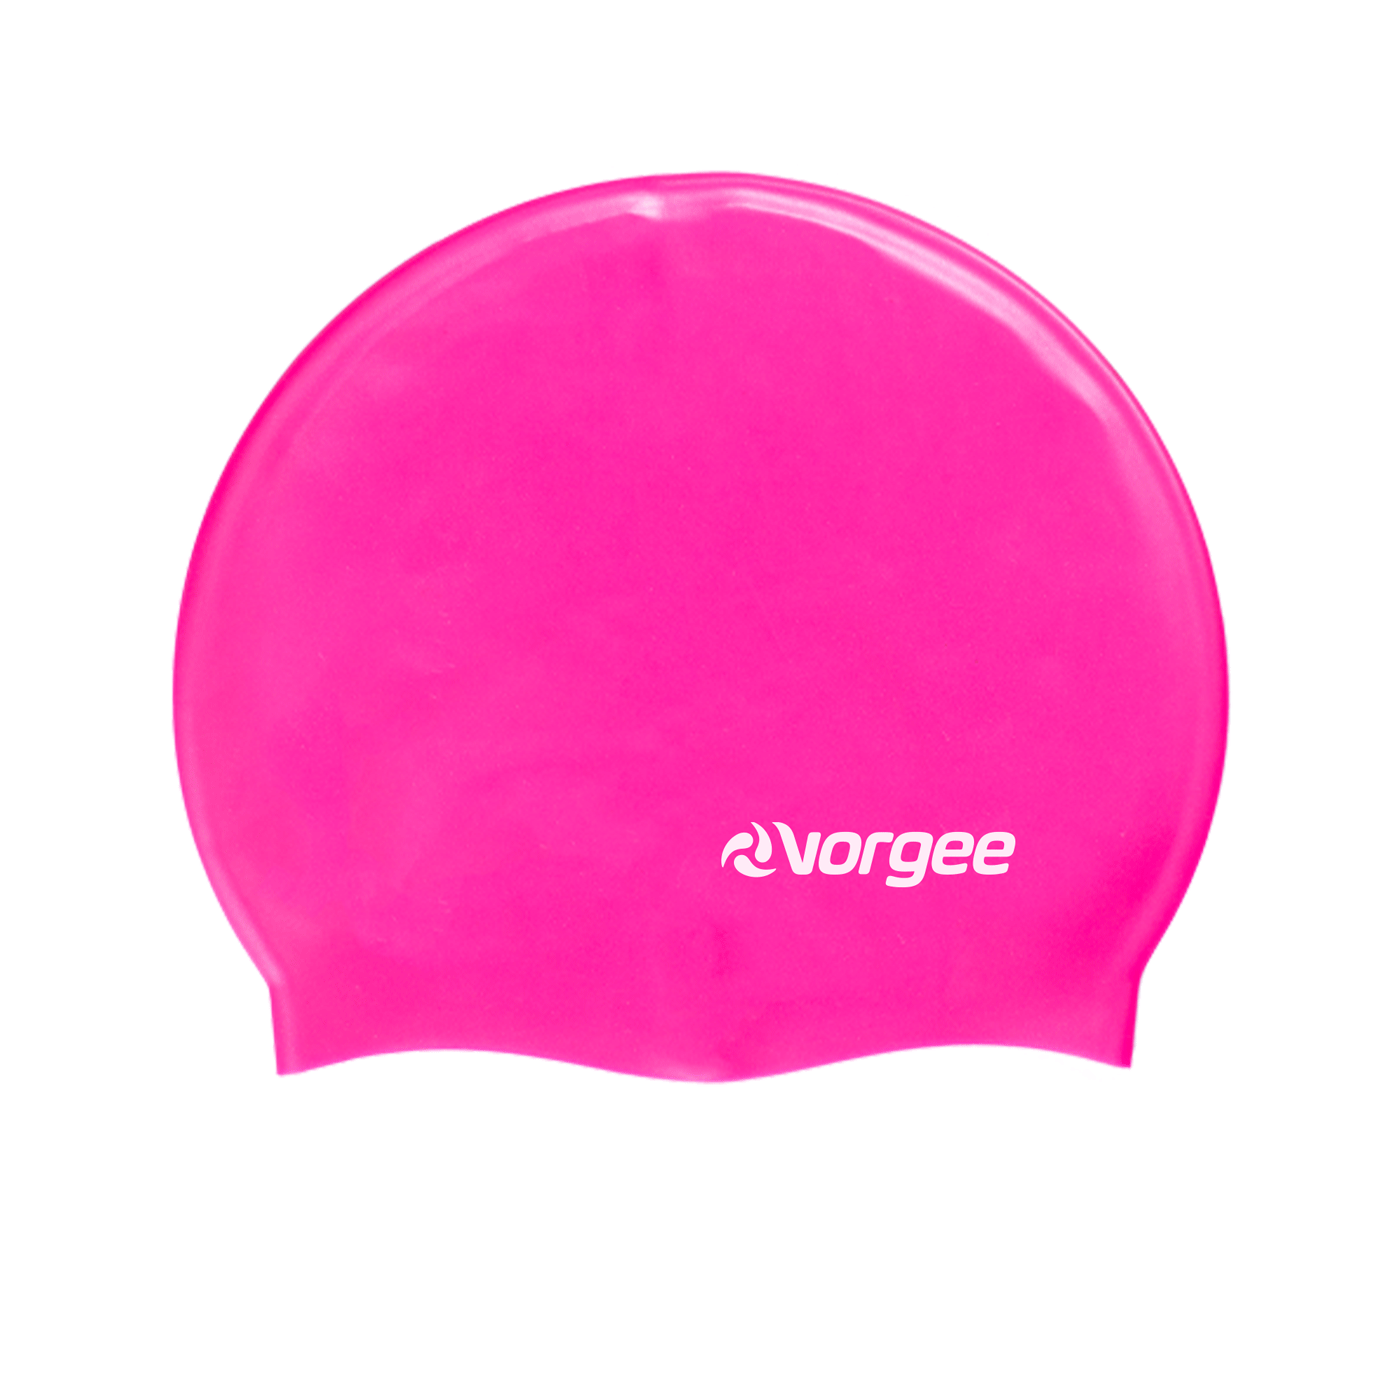 Vorgee Silicone Swimming Cap